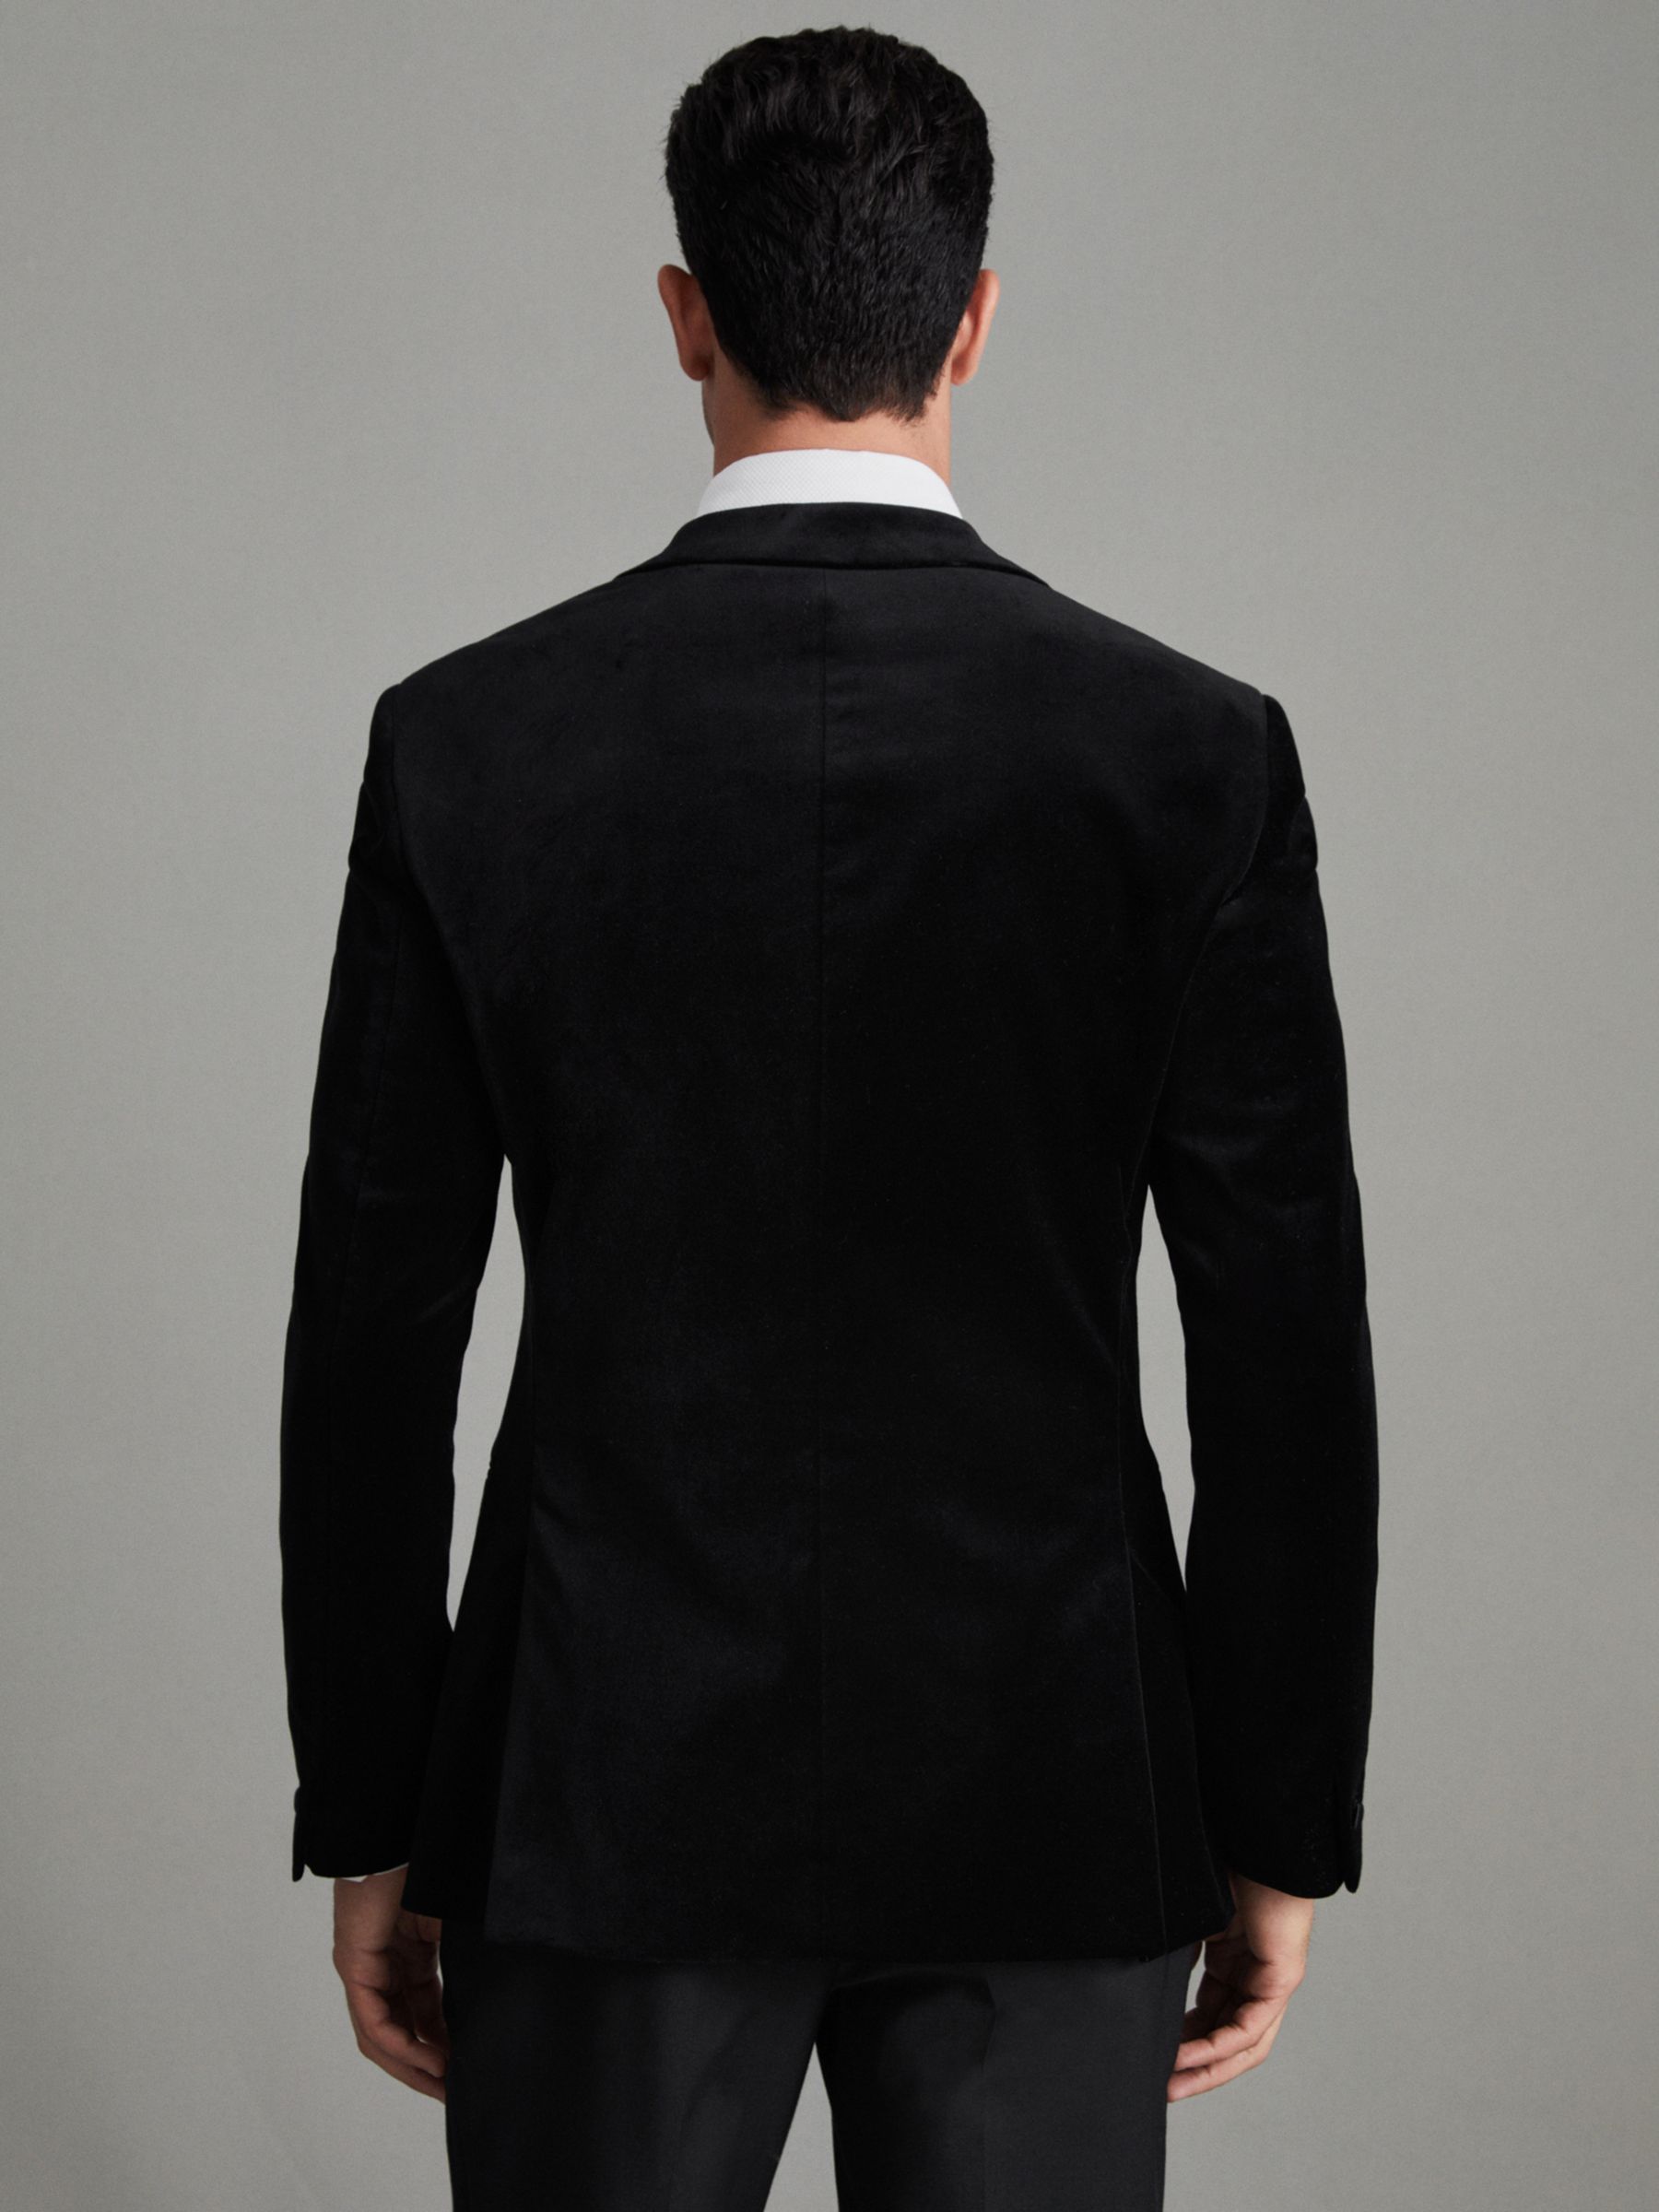 Reiss Ace Velvet Dinner Suit Jacket, Black at John Lewis & Partners